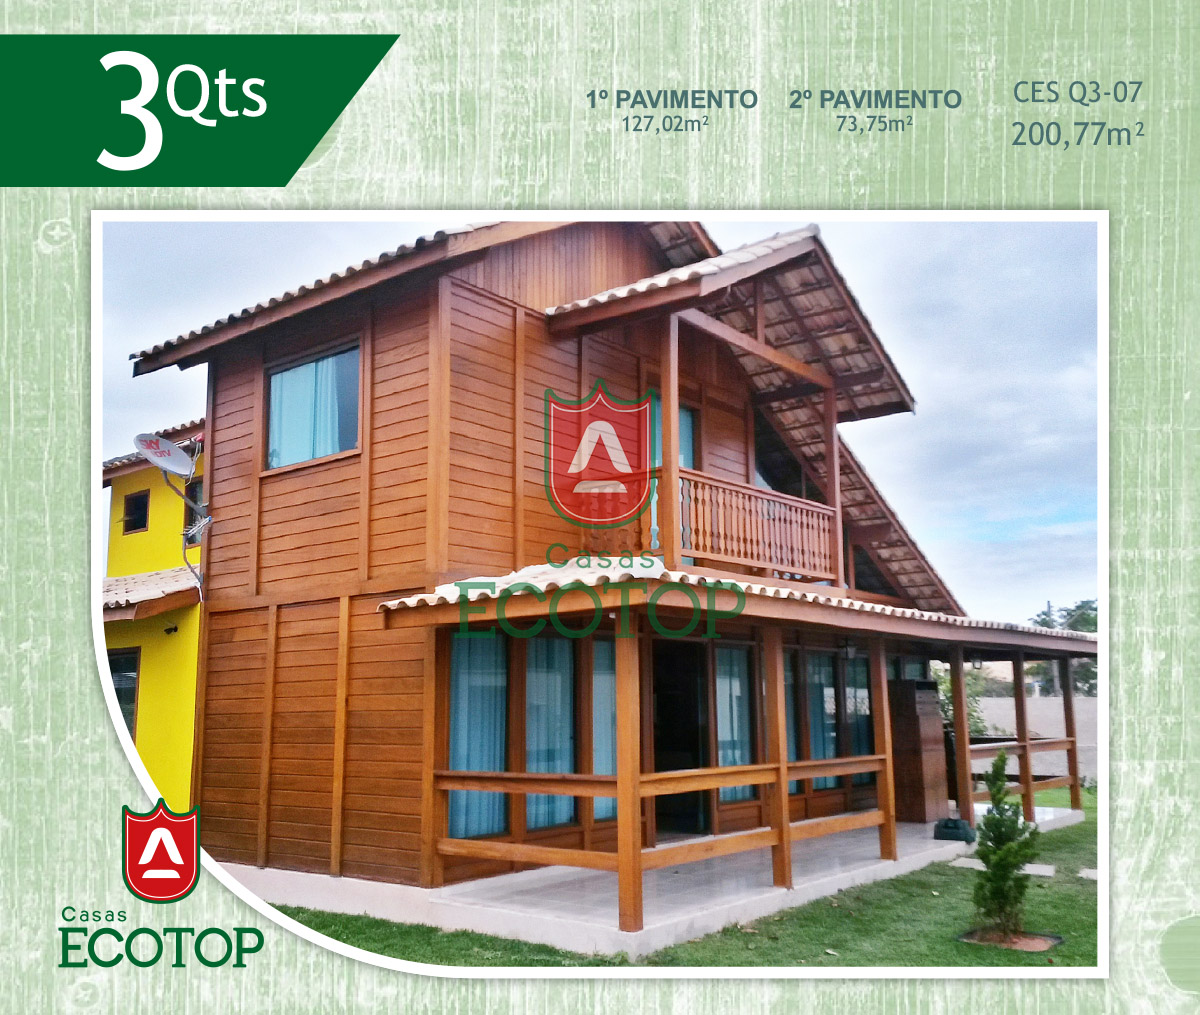 ces-07-fachada-casas-de-madeira-ecotop.cdr